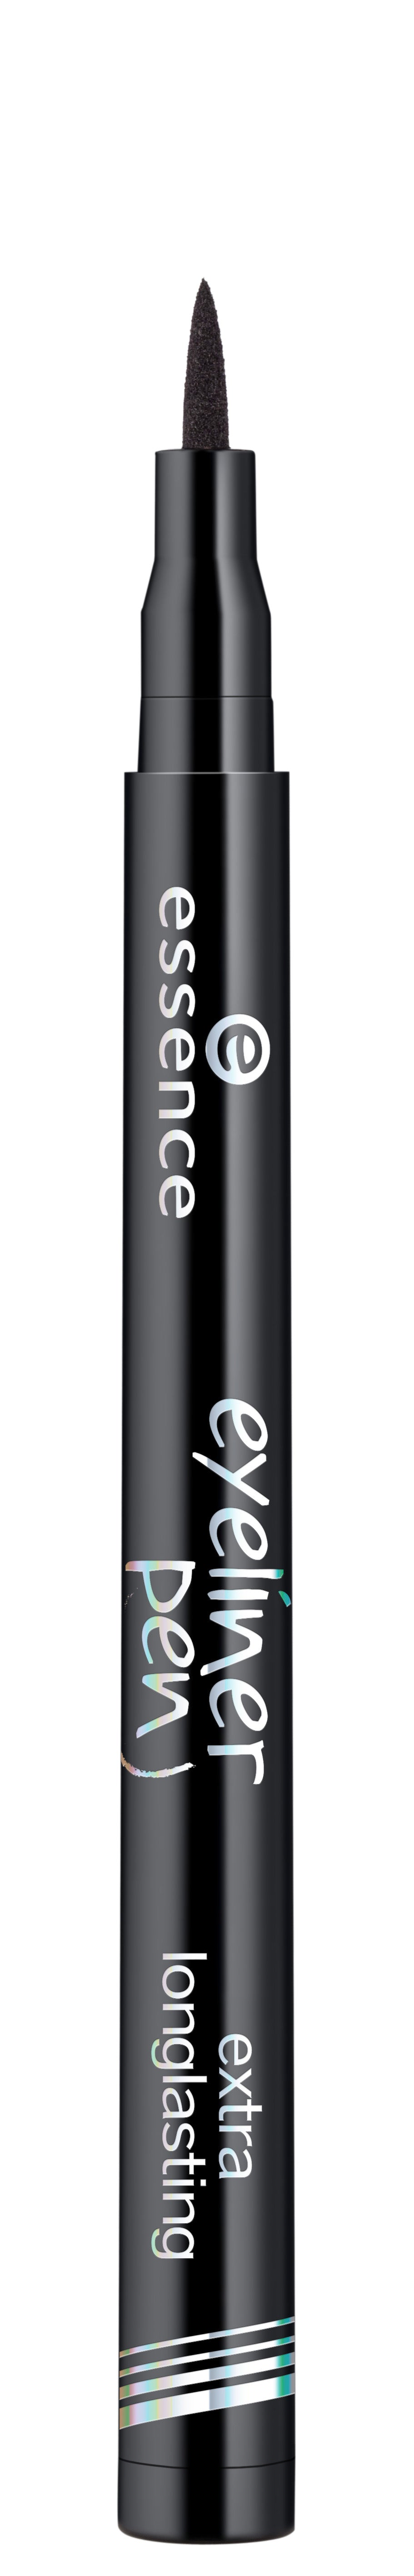 Essence - Eyeliner Pen Extra Longlasting